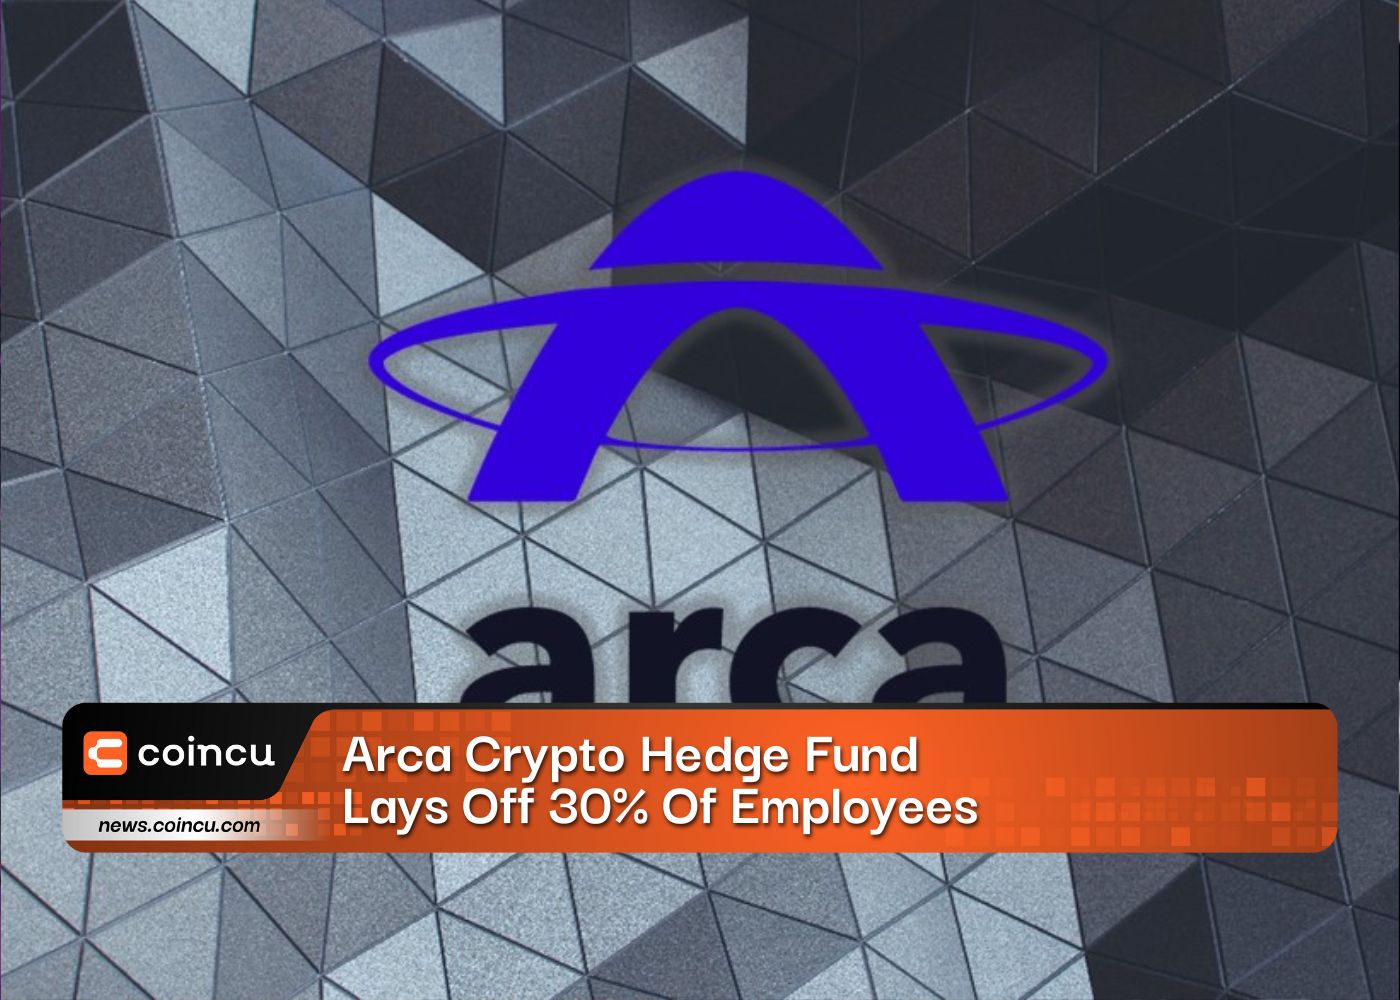 Arca Crypto Hedge Fund entlässt 30 % der Mitarbeiter